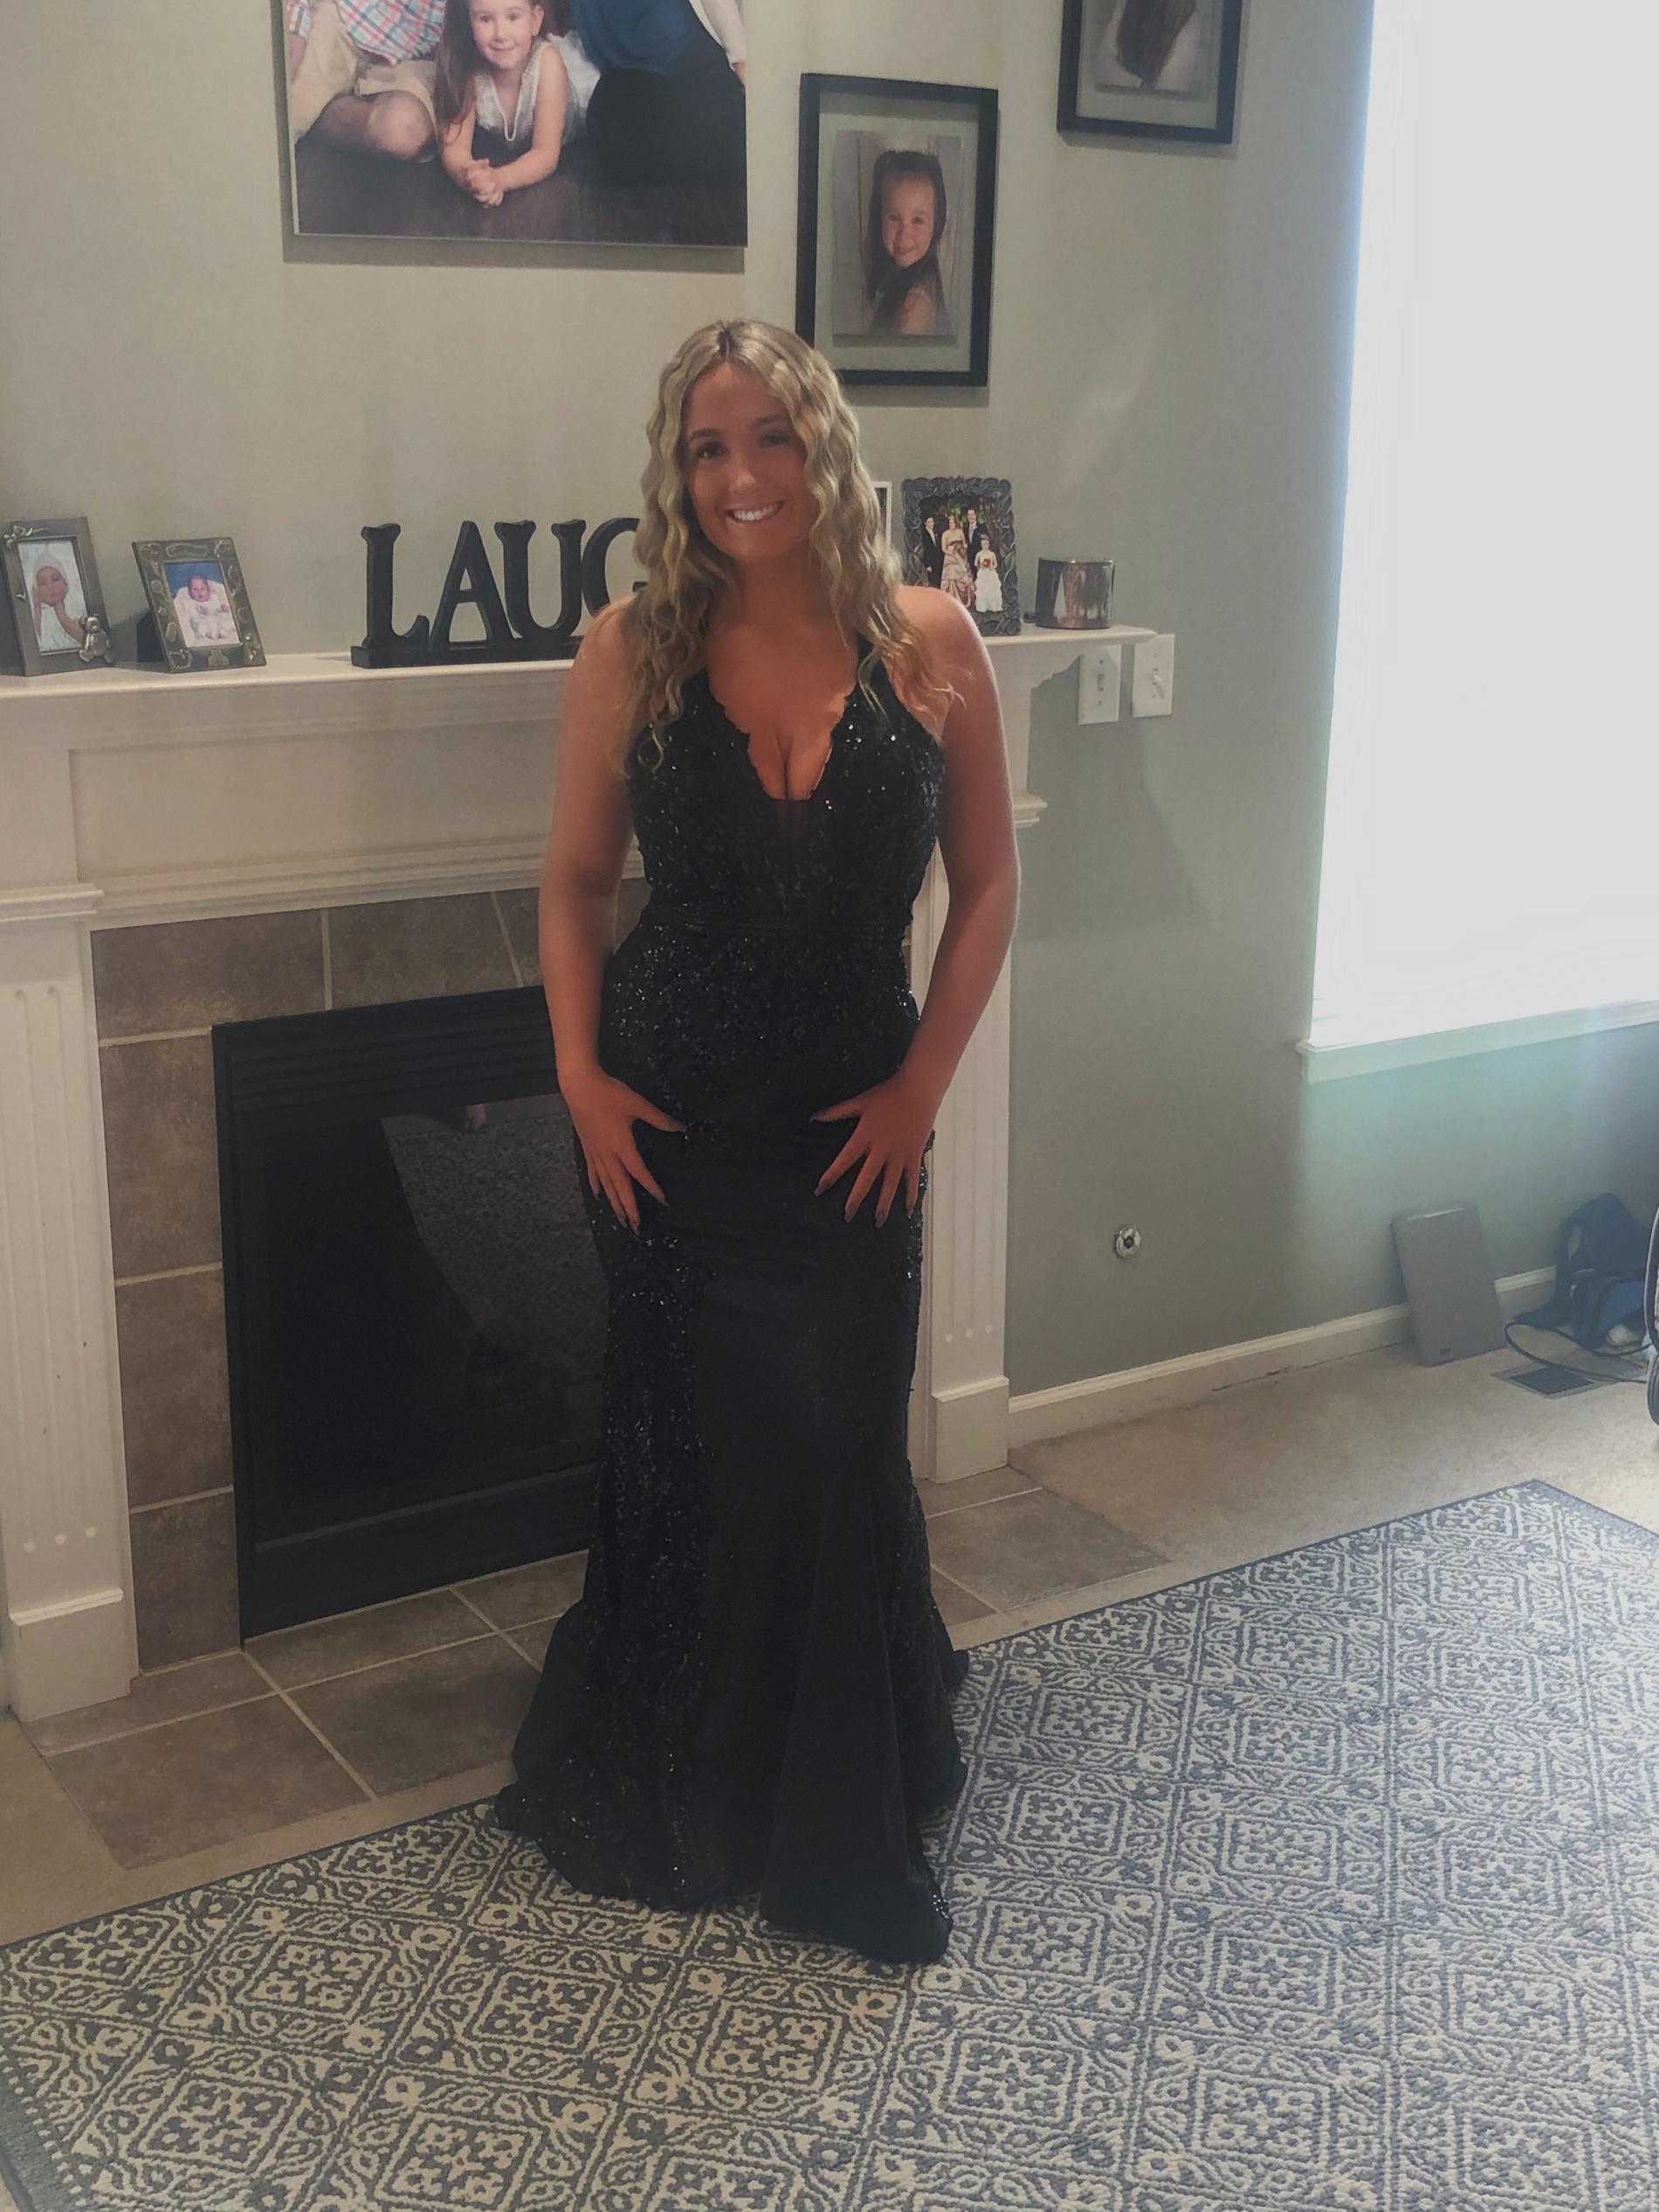 Ellie Wilde Size 12 Black Mermaid Dress on Queenly